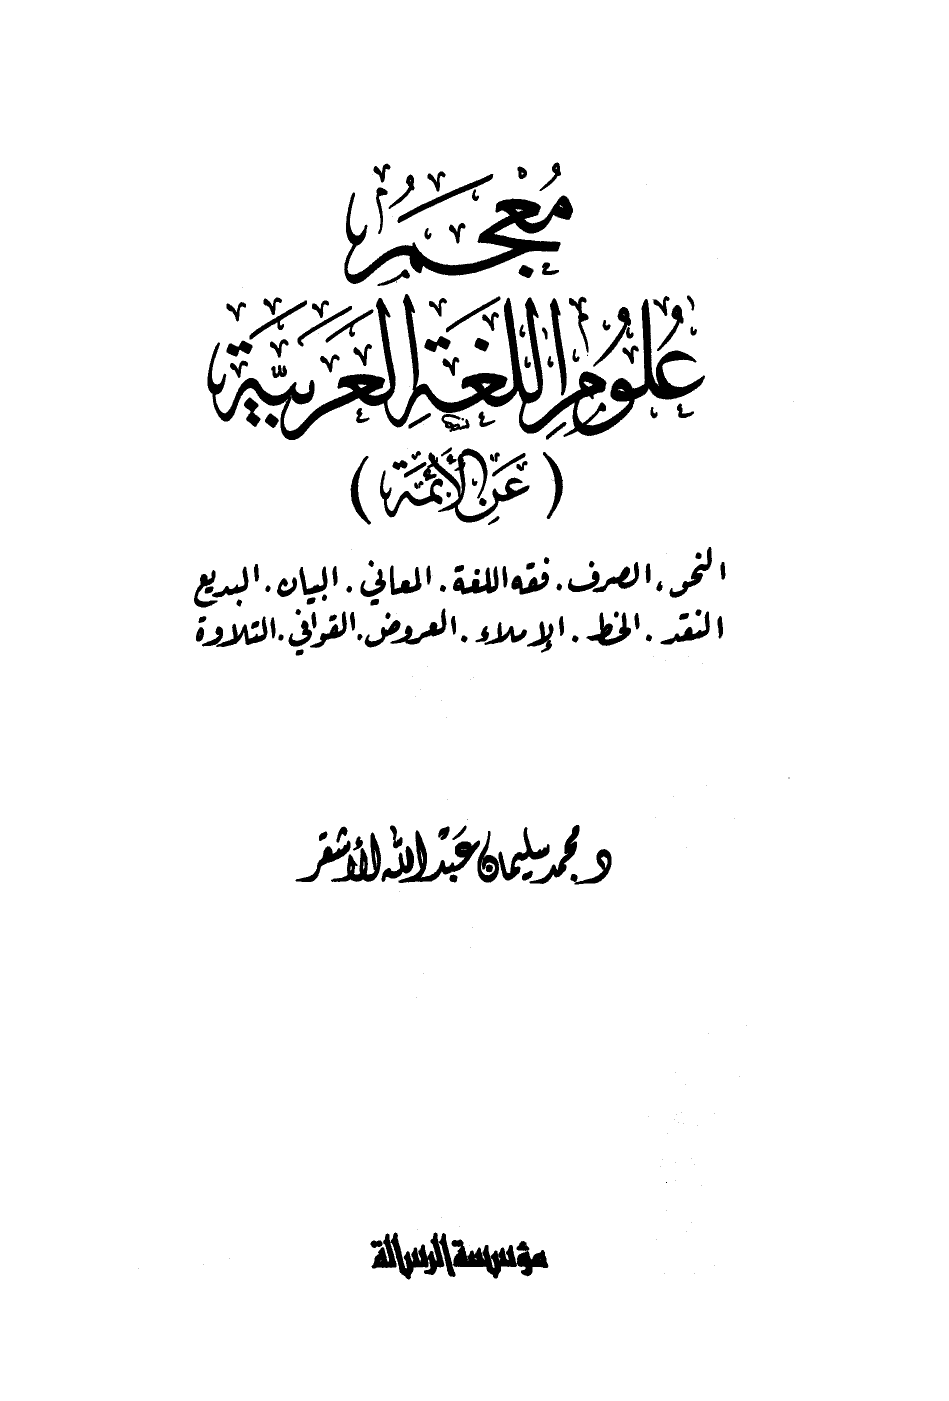 معجم علوم اللغة العربية - نسخة مصورة